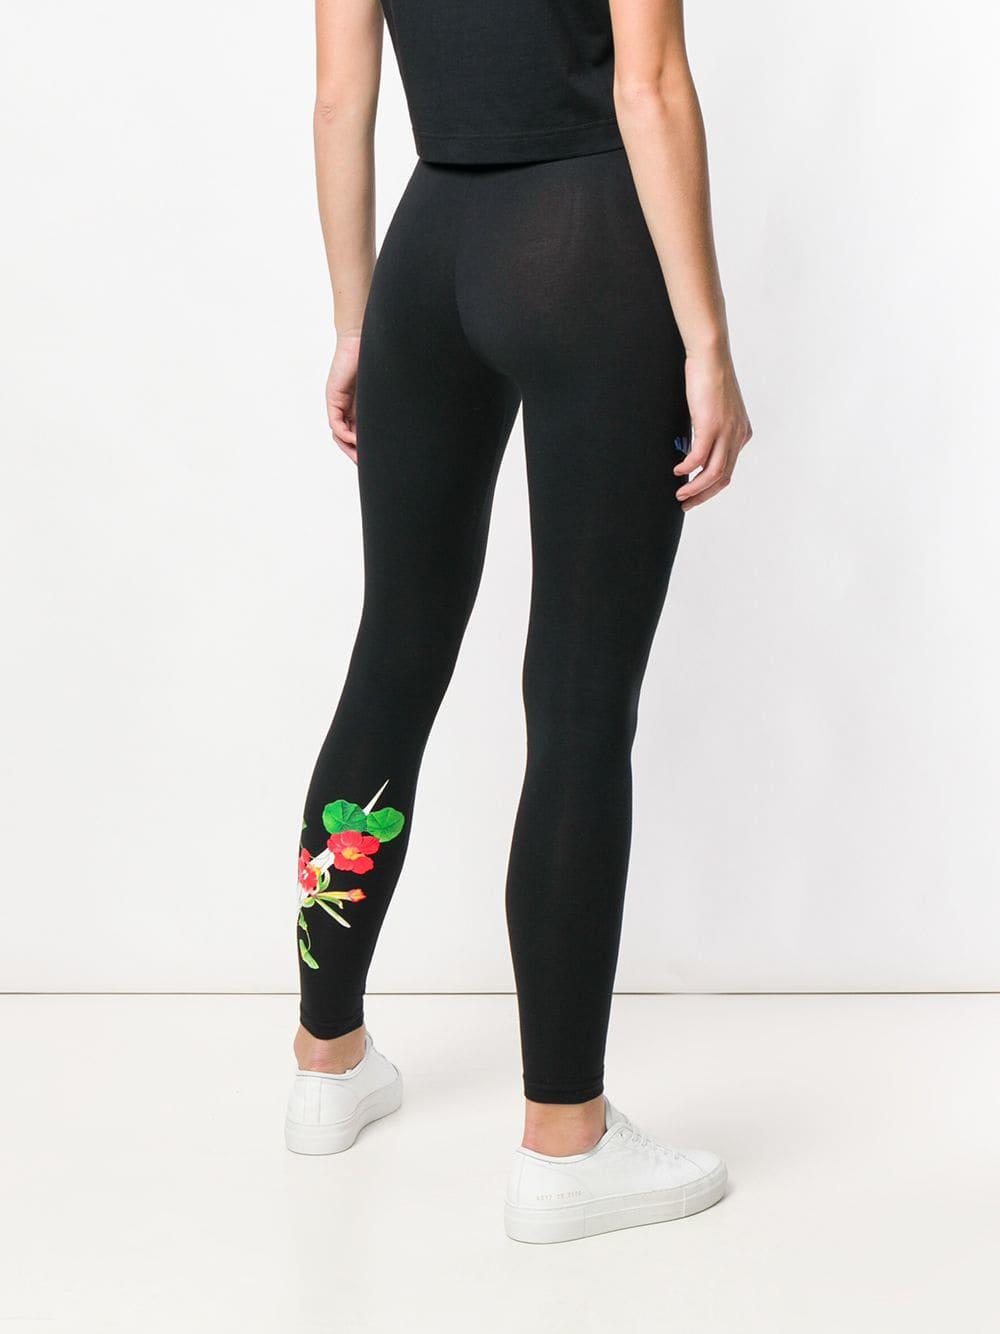 qqqwjf.nike floral print tights , Off 63%,dolphin-yachts.com